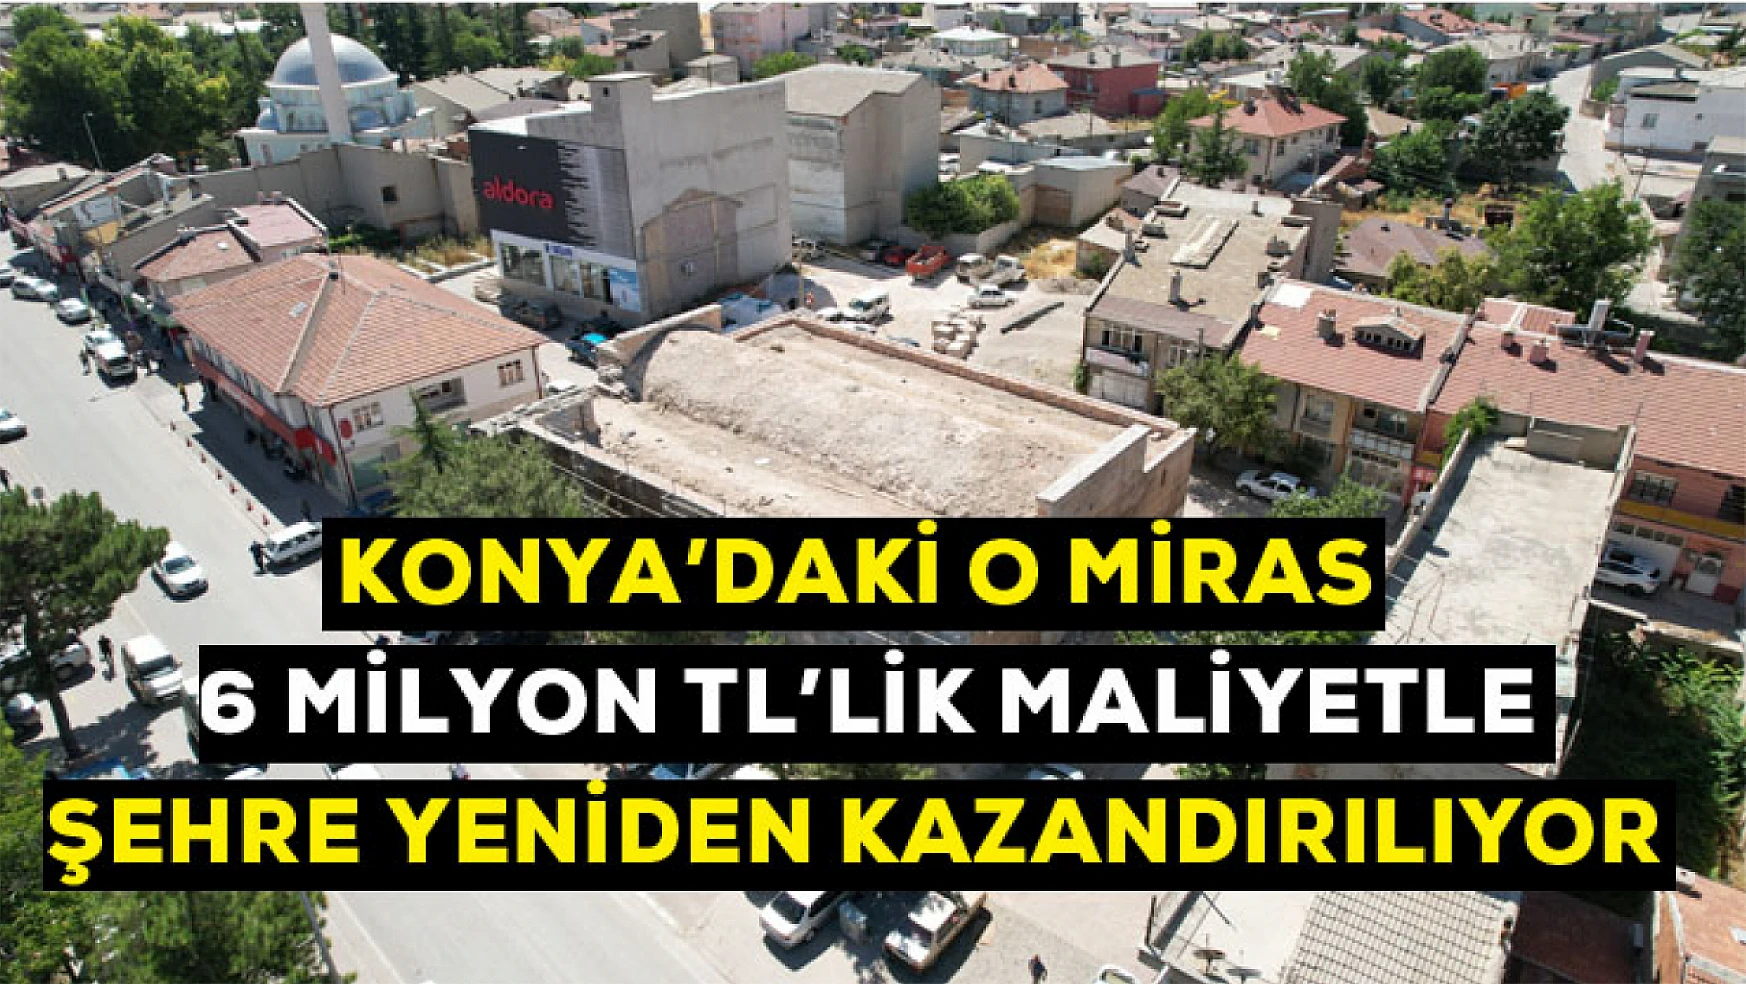 Konya'daki o miras 6 milyon Tl'lik maliyetle  şehre yeniden kazandırılıyor